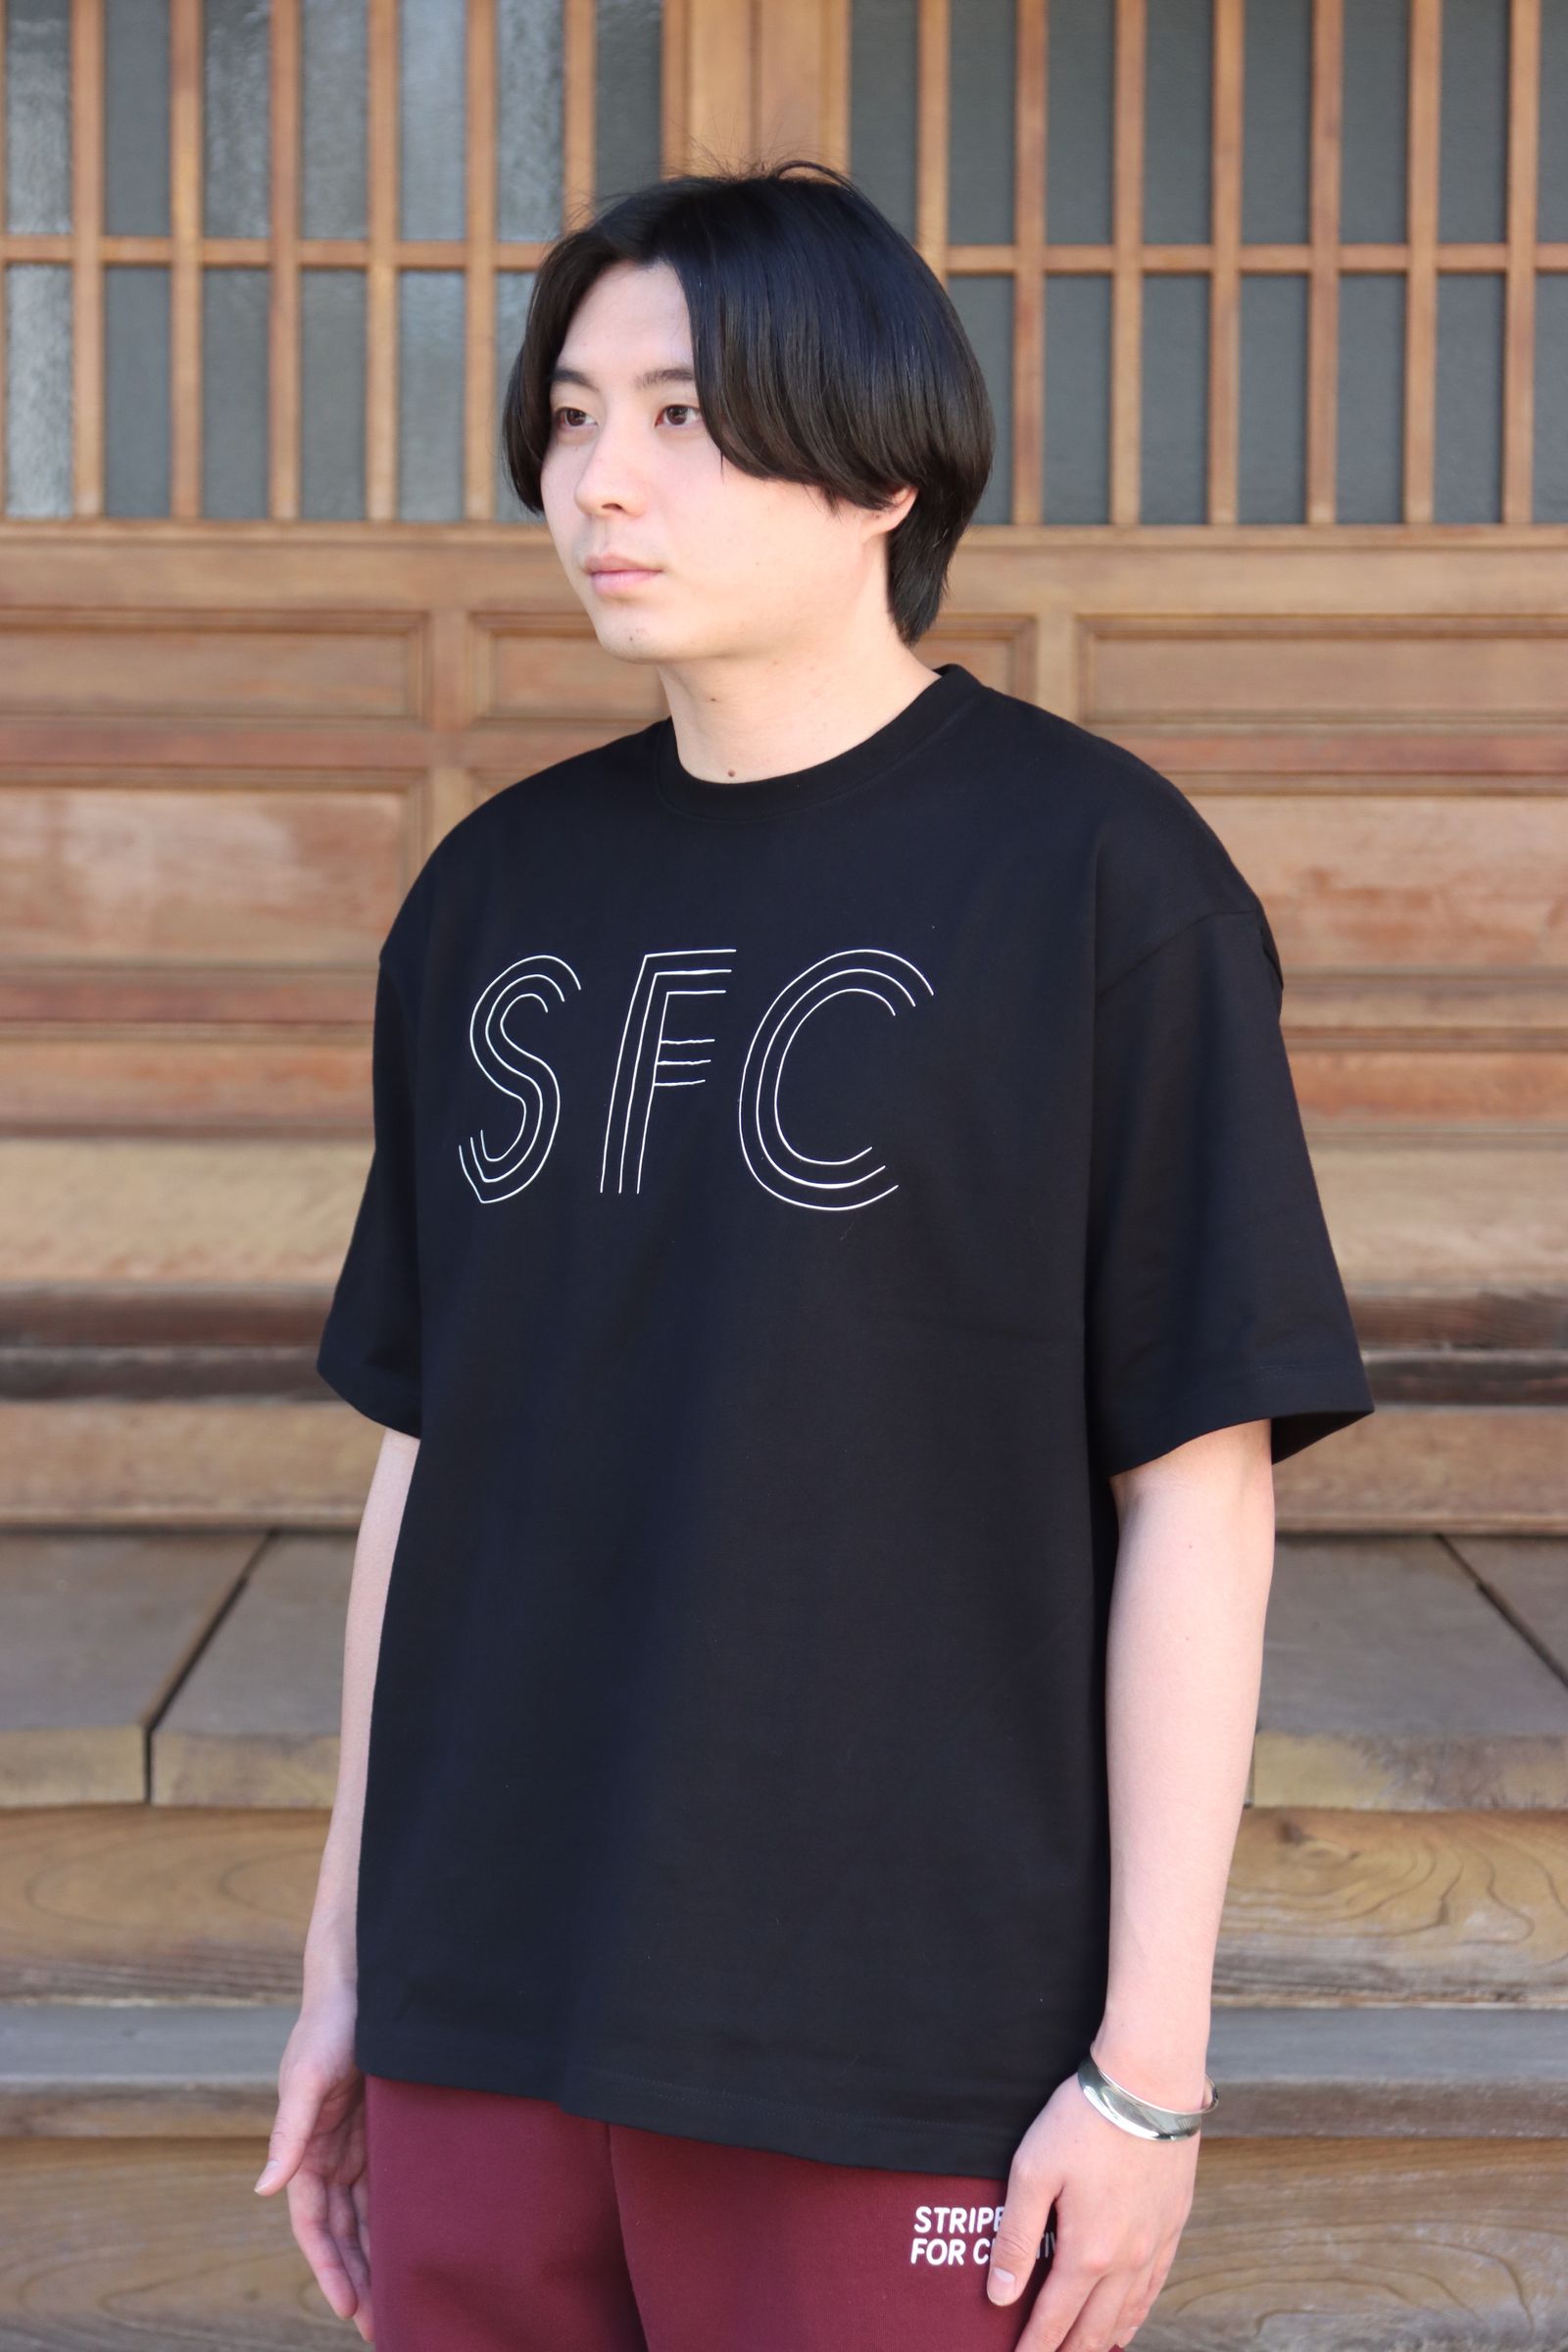 のサイズ stripes for creative ストライプシャツ SFC seesee ィーケー